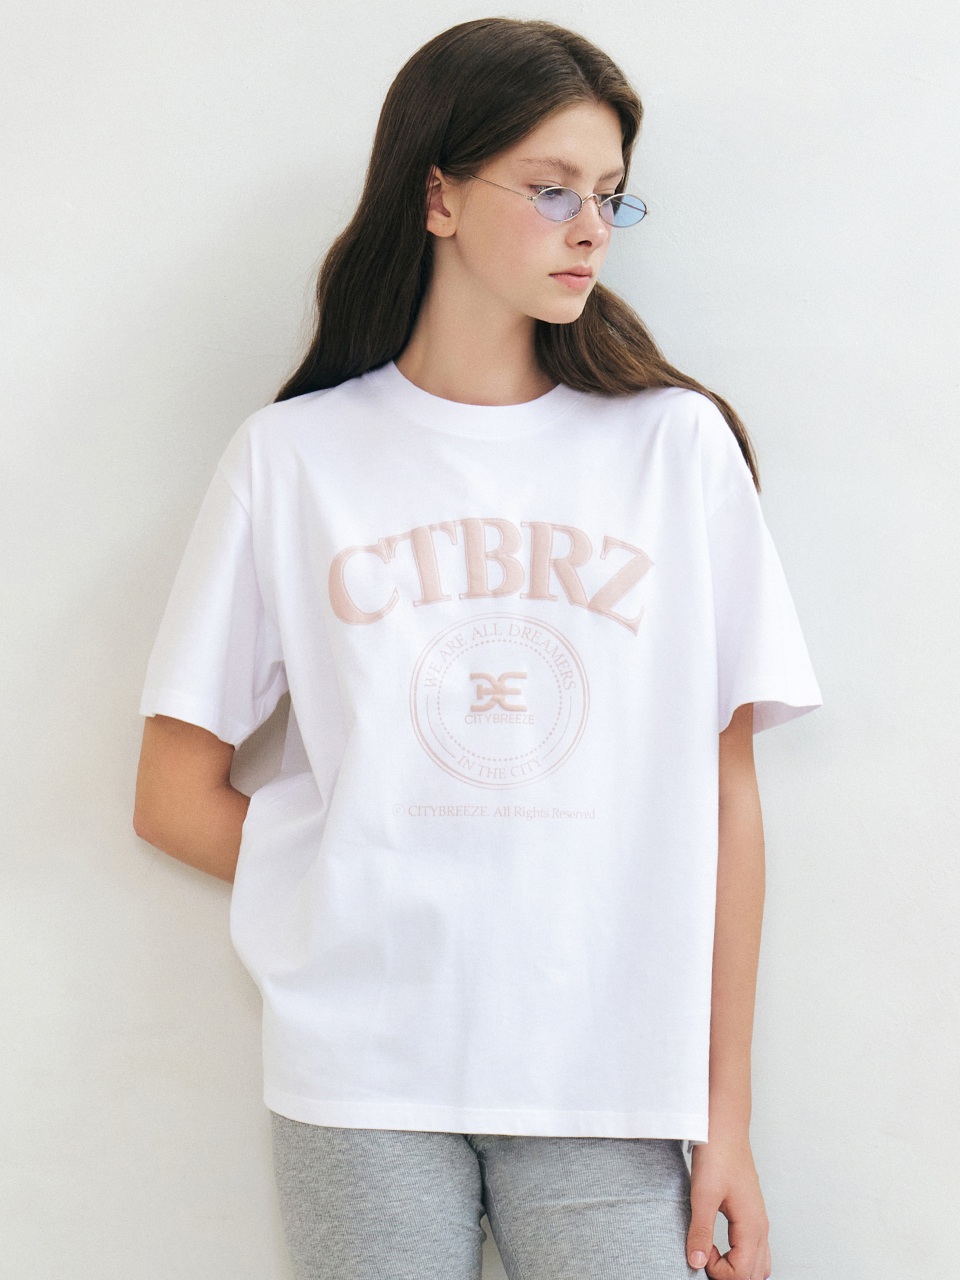 CTBRZ 써클 아트웍 반팔 티셔츠_WHITE